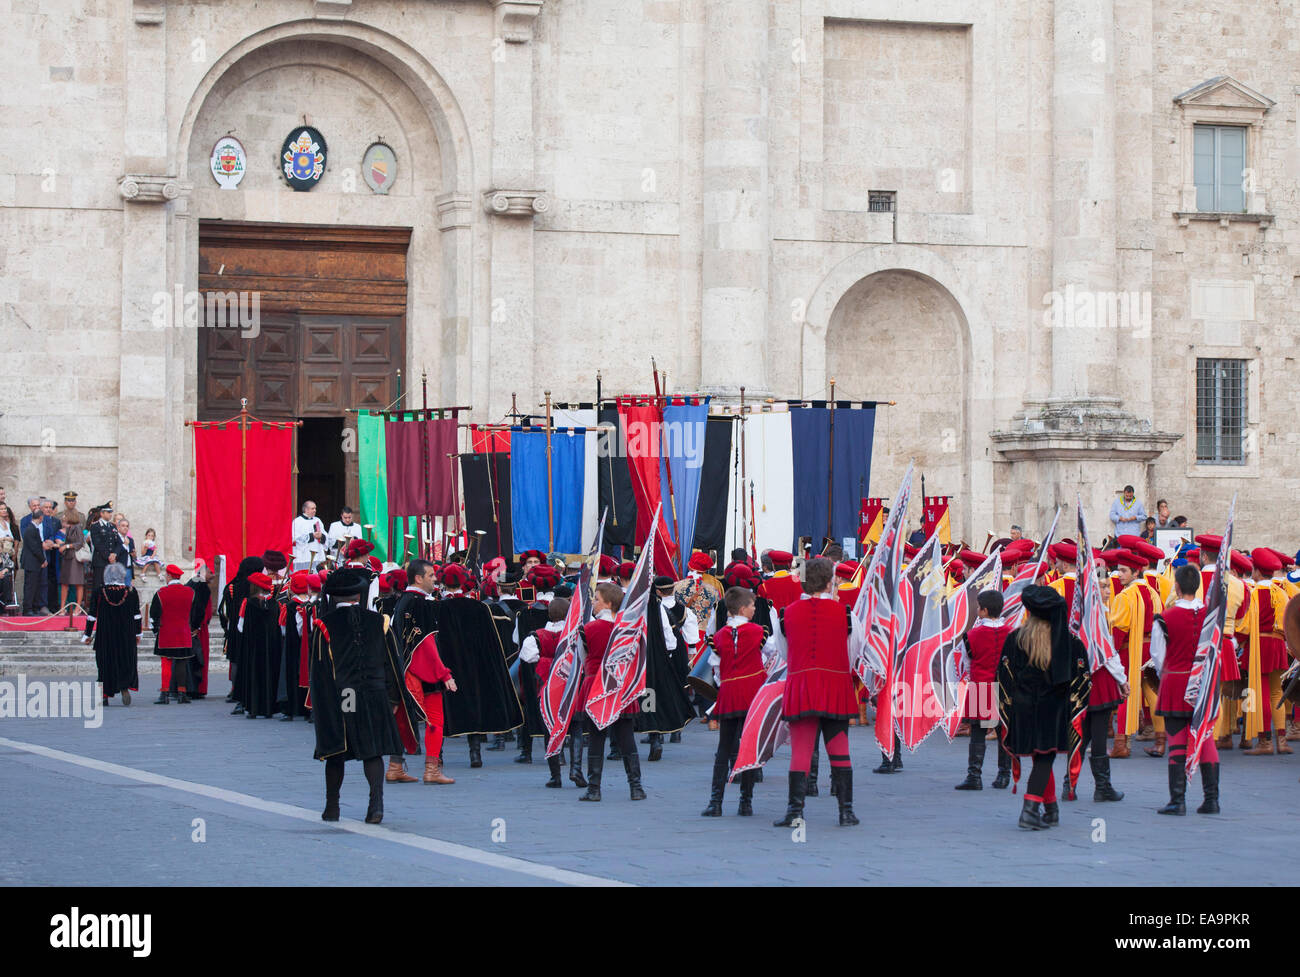 Processione della festa medievale di La Quintana al di fuori del Duomo (Cattedrale), Ascoli Piceno, Le Marche, Italia Foto Stock